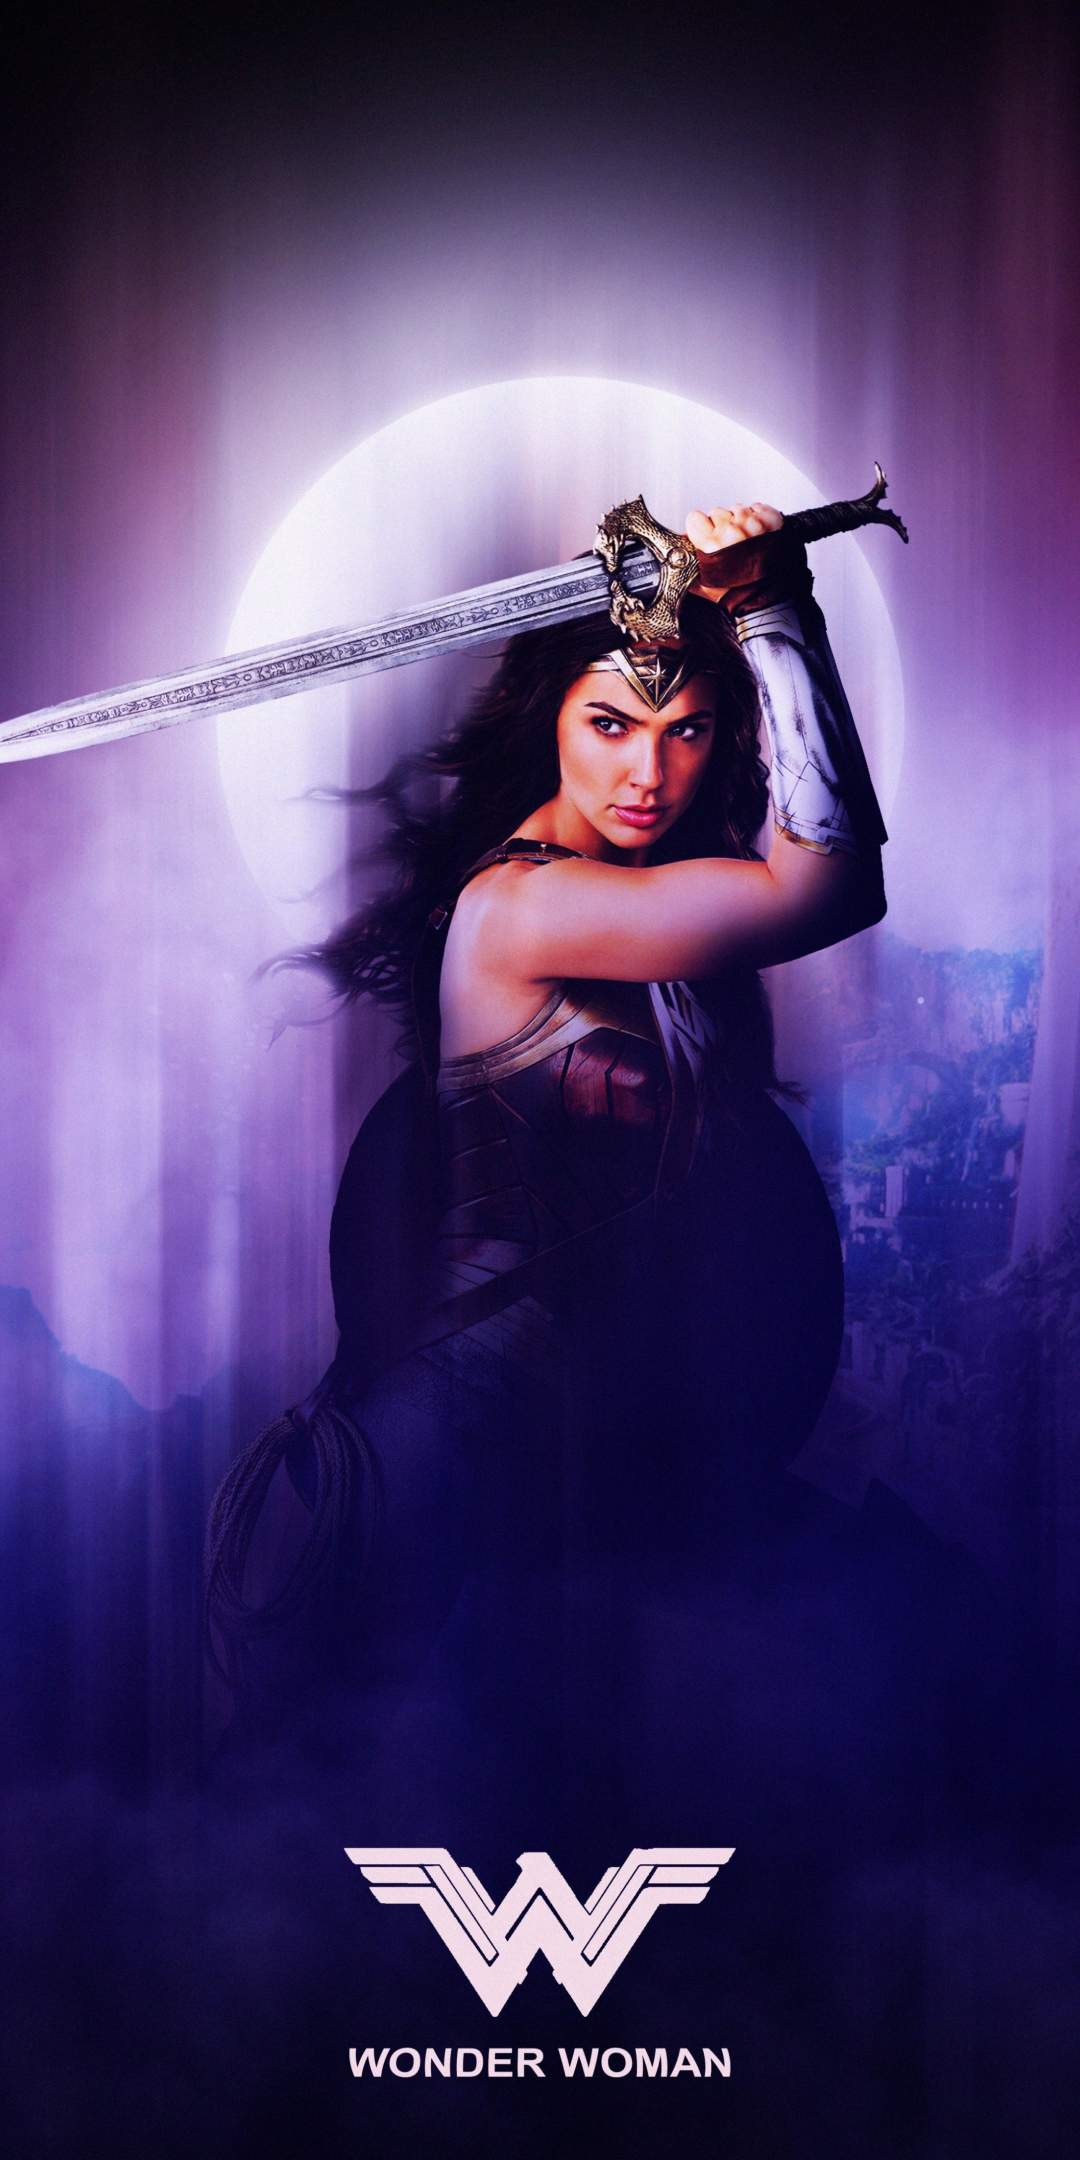 Justice league, superman, wonder woman, batman, collage, 1080x2160 wallpaper